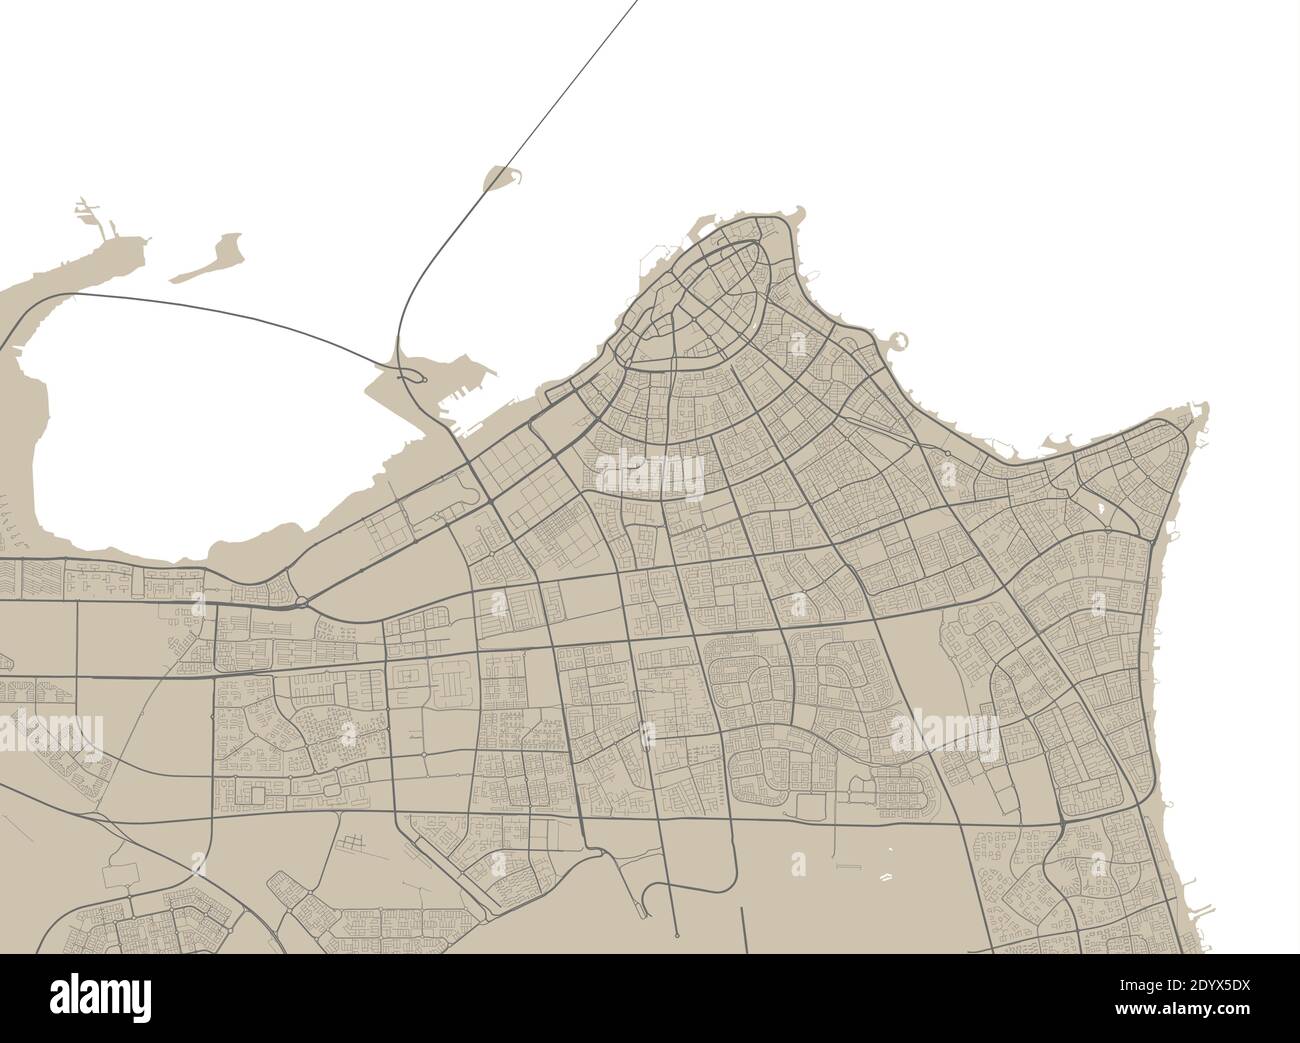 Carte détaillée de la zone administrative de Koweït. Illustration vectorielle libre de droits. Panorama urbain. Carte touristique graphique décorative du Koweït territ Illustration de Vecteur